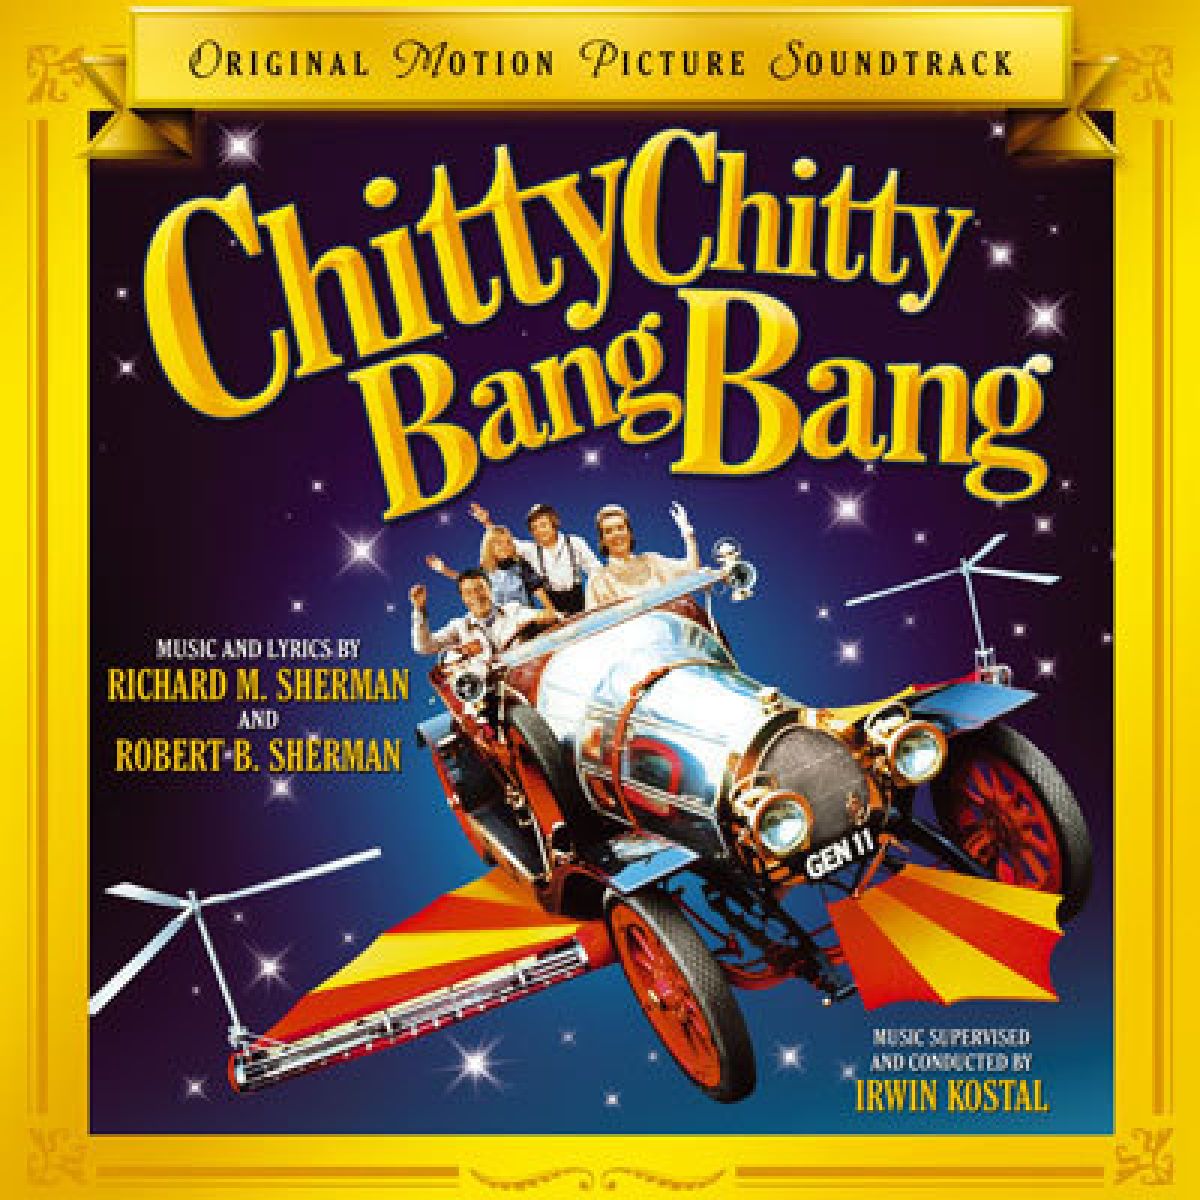 Chitty chitty bang bang. Chitty Chitty Bang Bang 1968. Queendom - Chitty Chitty Bang Bang. Chitty Chitty Bang Bang 1968 Blu-ray.